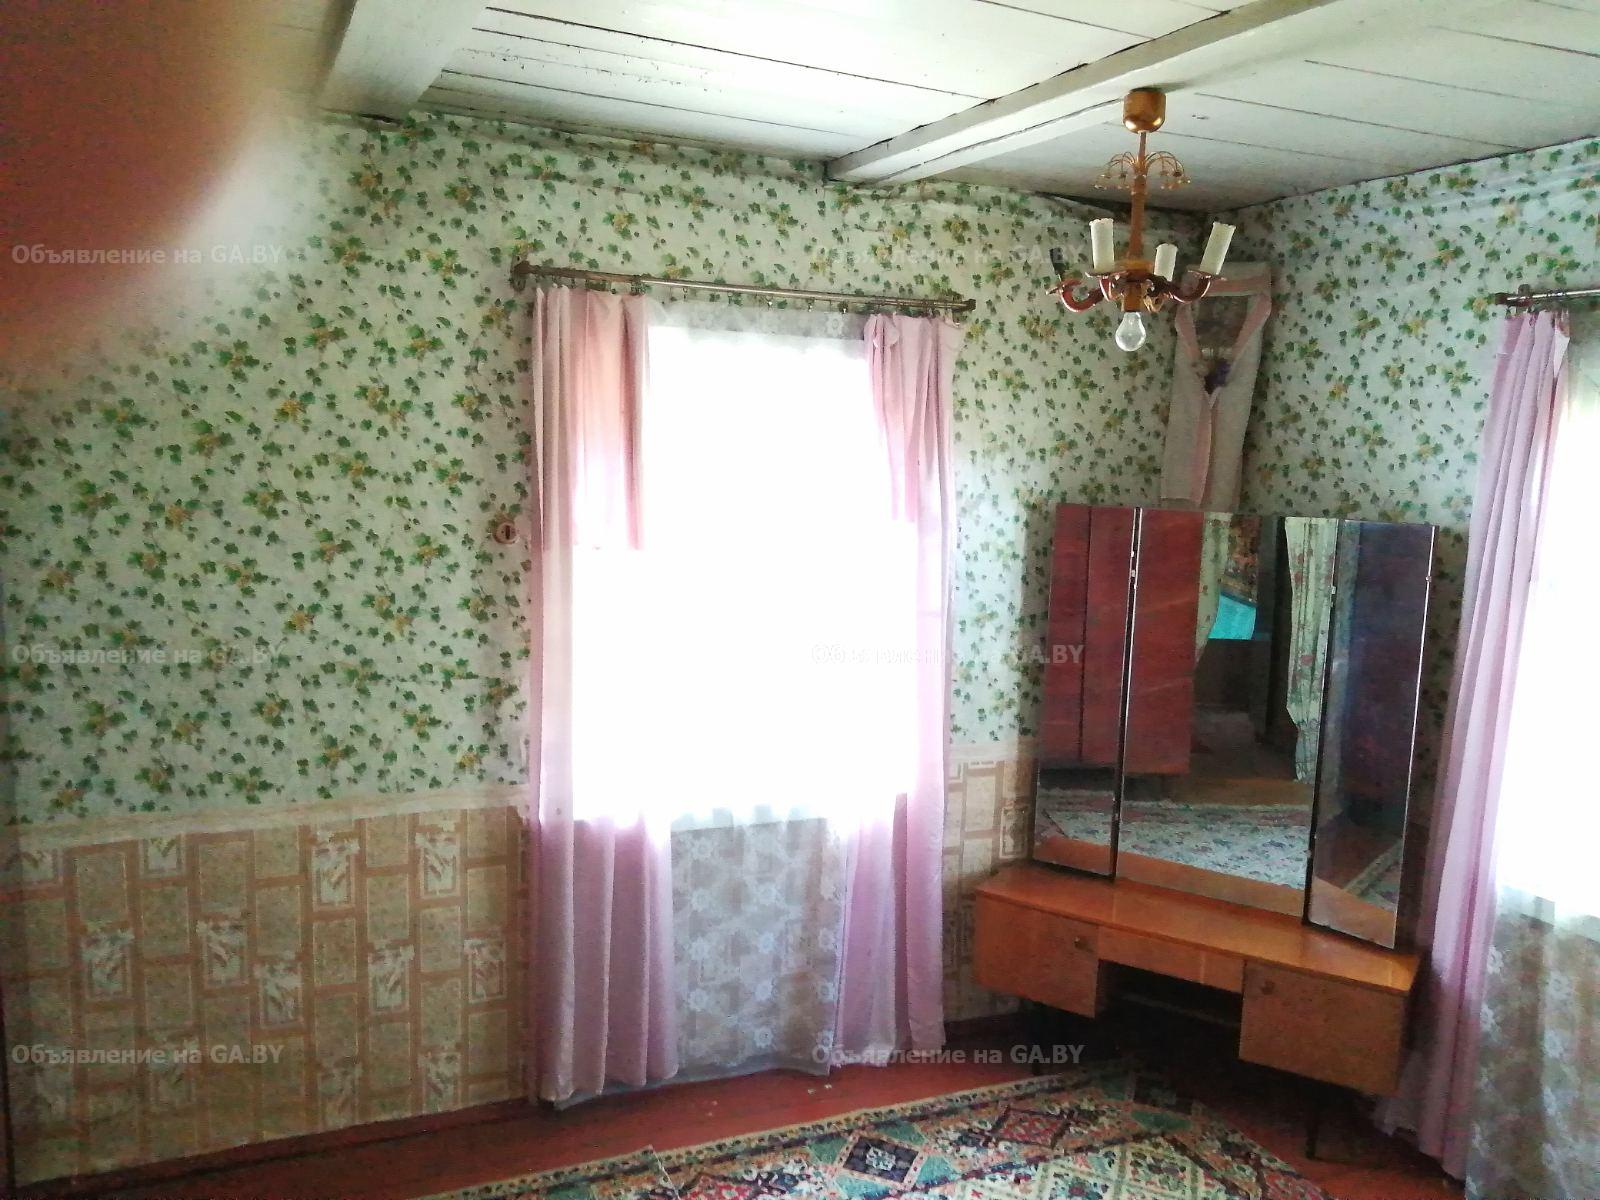 Бесплатно Продам дом на центральной улице города Смолевичи  25000$ - GA.BY